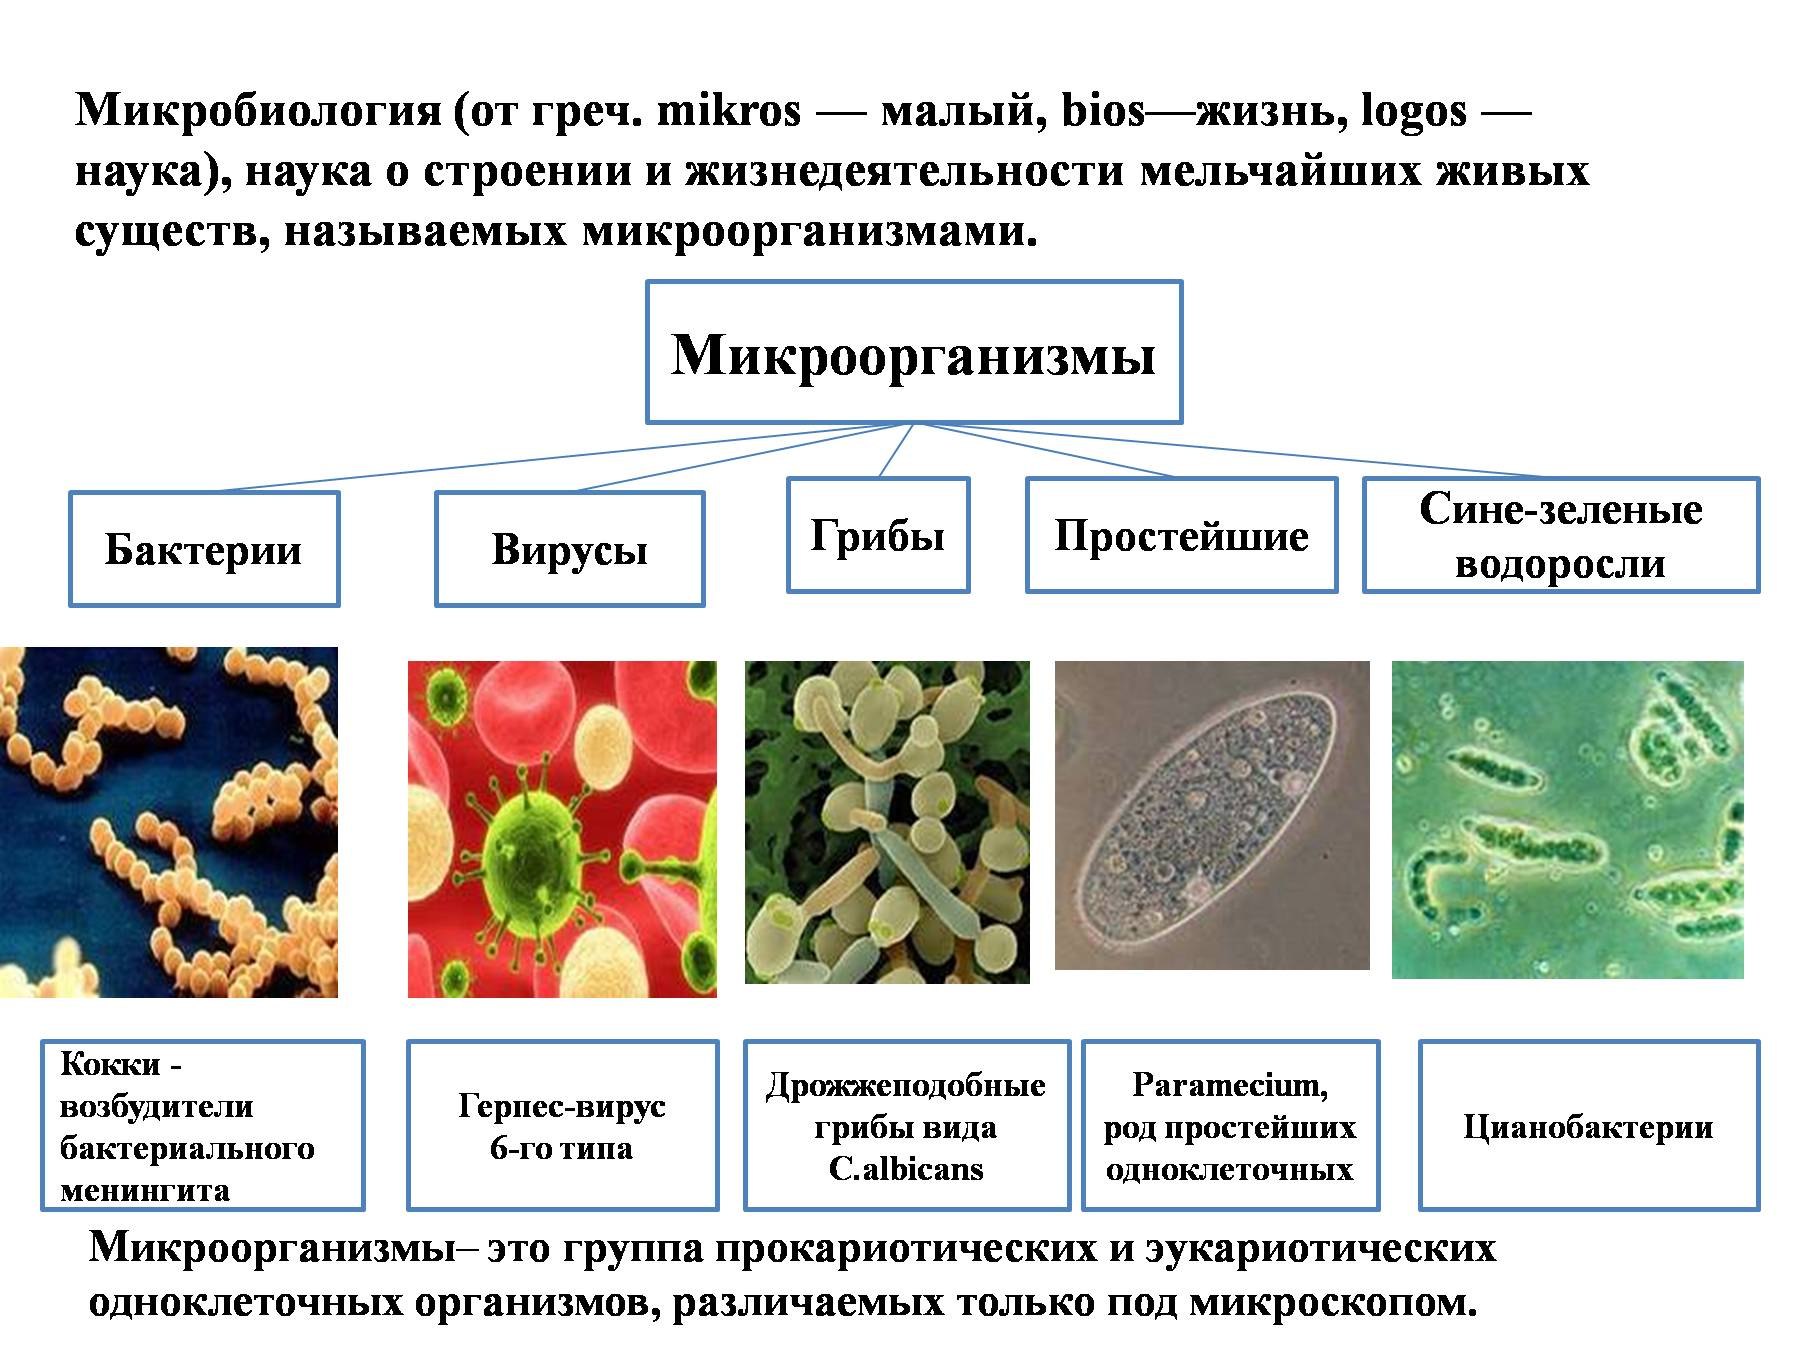 Прокариоты вирусы грибы. Строение микробов микробиология. Бактерии и вирусы таблица микробиология. Вирусы бактерии протисты. Классификация бактерий и вирусов.